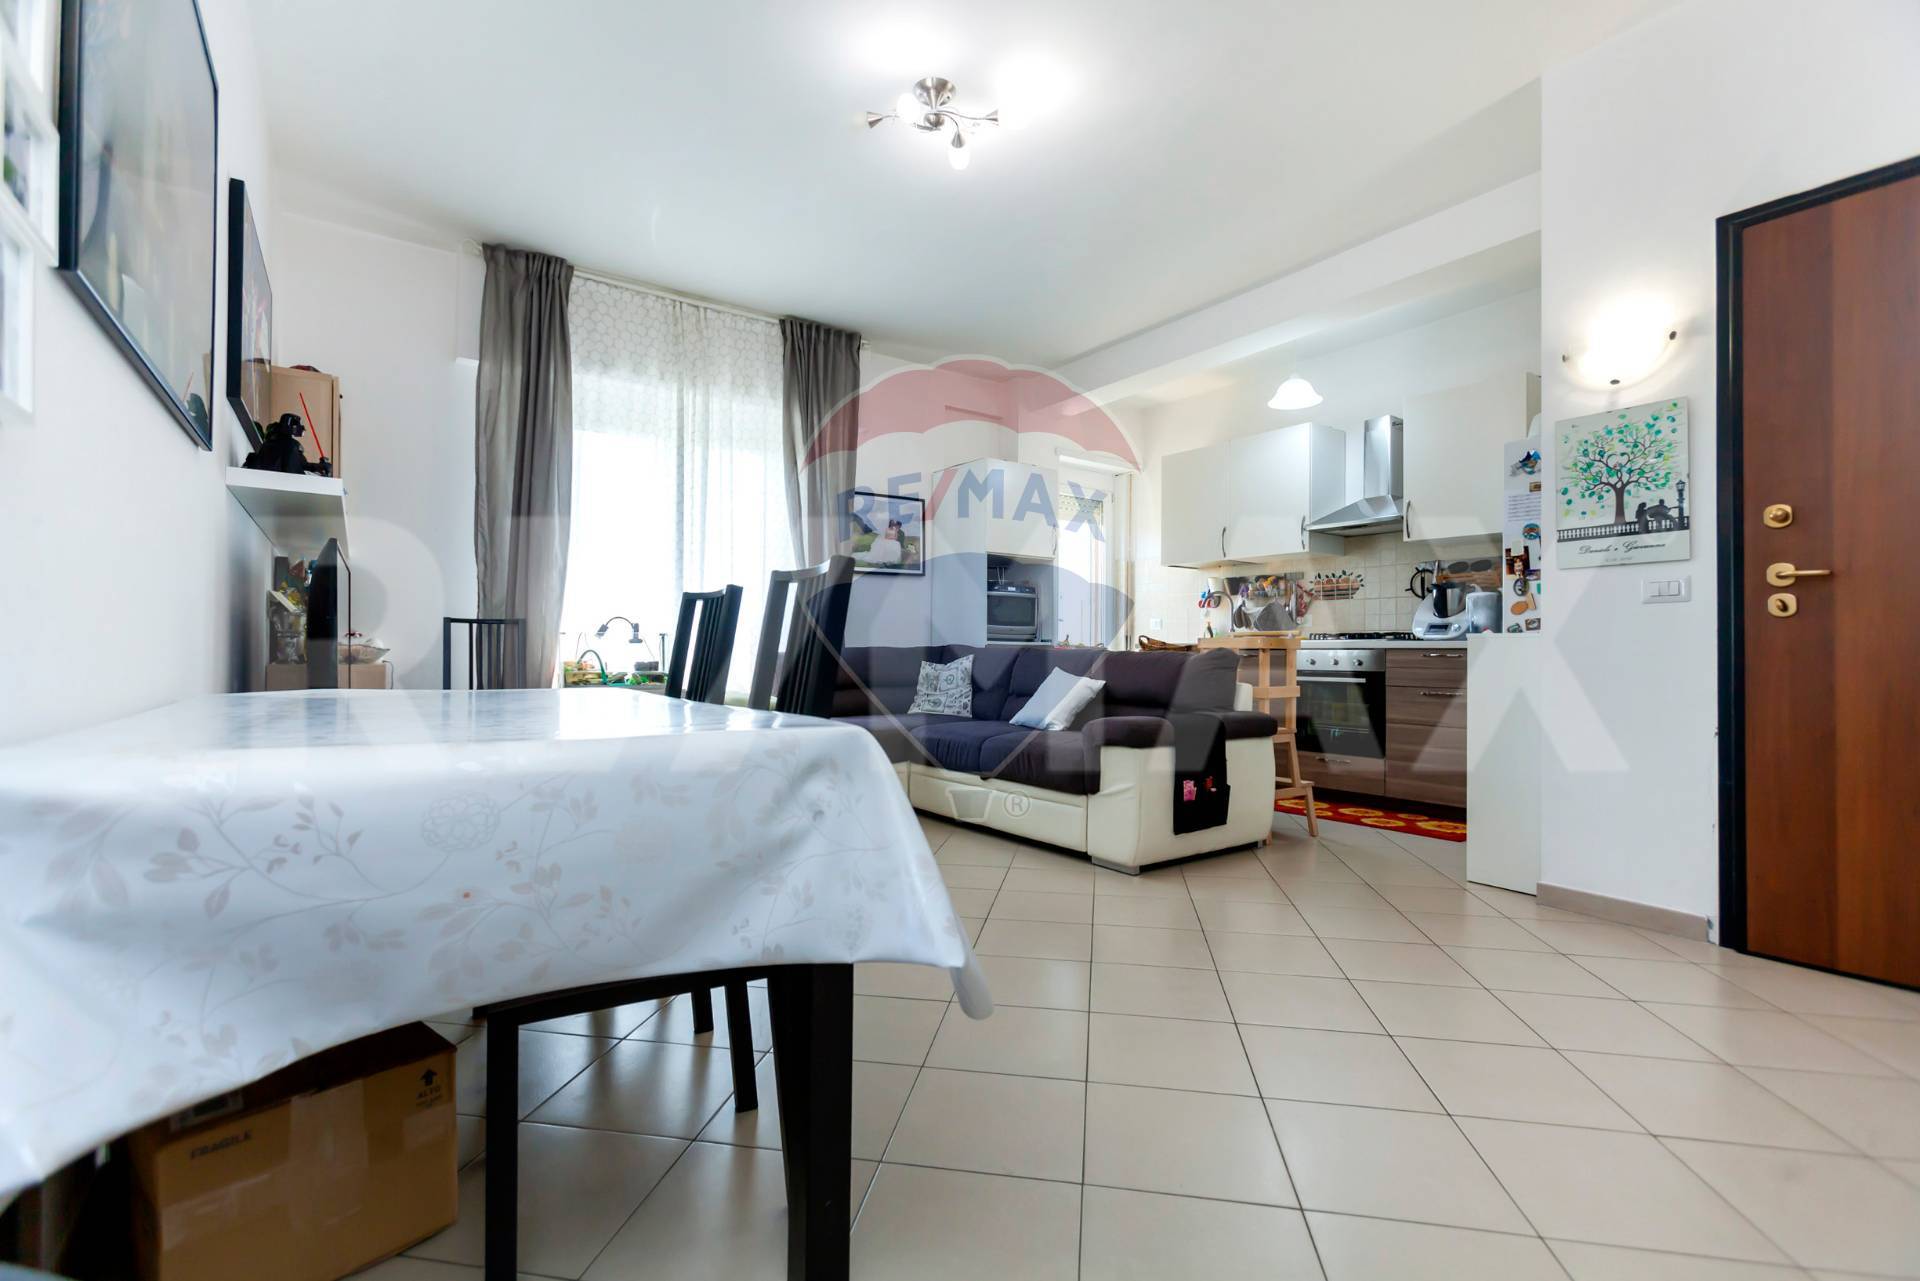 Appartamento in vendita a Guidonia Montecelio, 3 locali, zona Località: ColleVerde, prezzo € 148.000 | CambioCasa.it